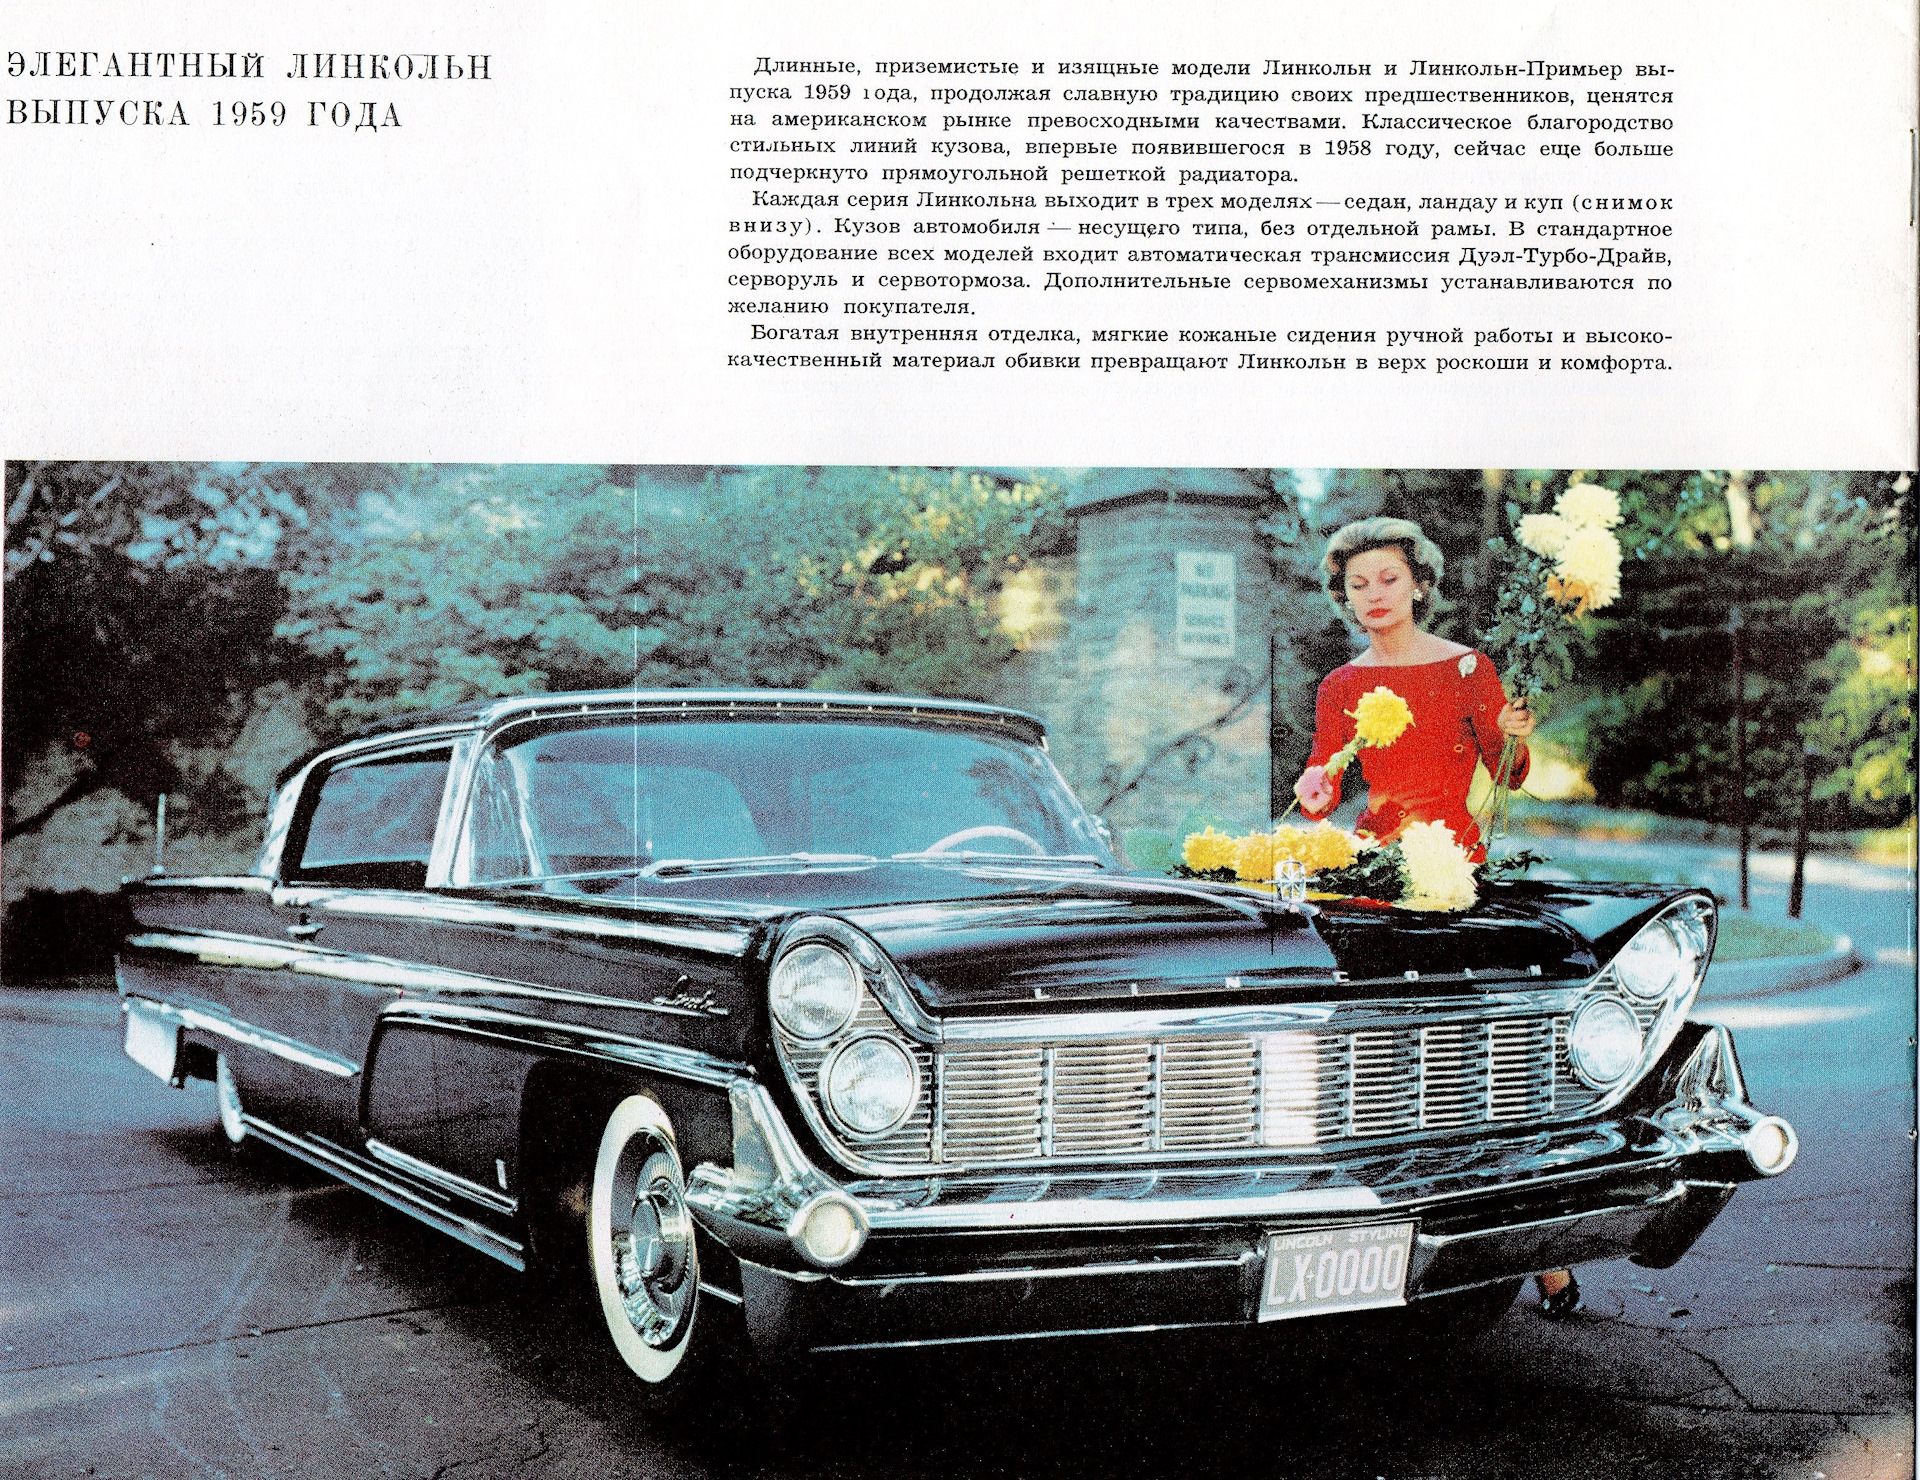 Год выпуска турбо. Рекламный буклет Дженерал Моторс 1959. Дженерал Моторс в Сокольниках в 1959 году. Автомобиль Линкольн 1959 года. Автомобиль Дженерал Моторс 1959.